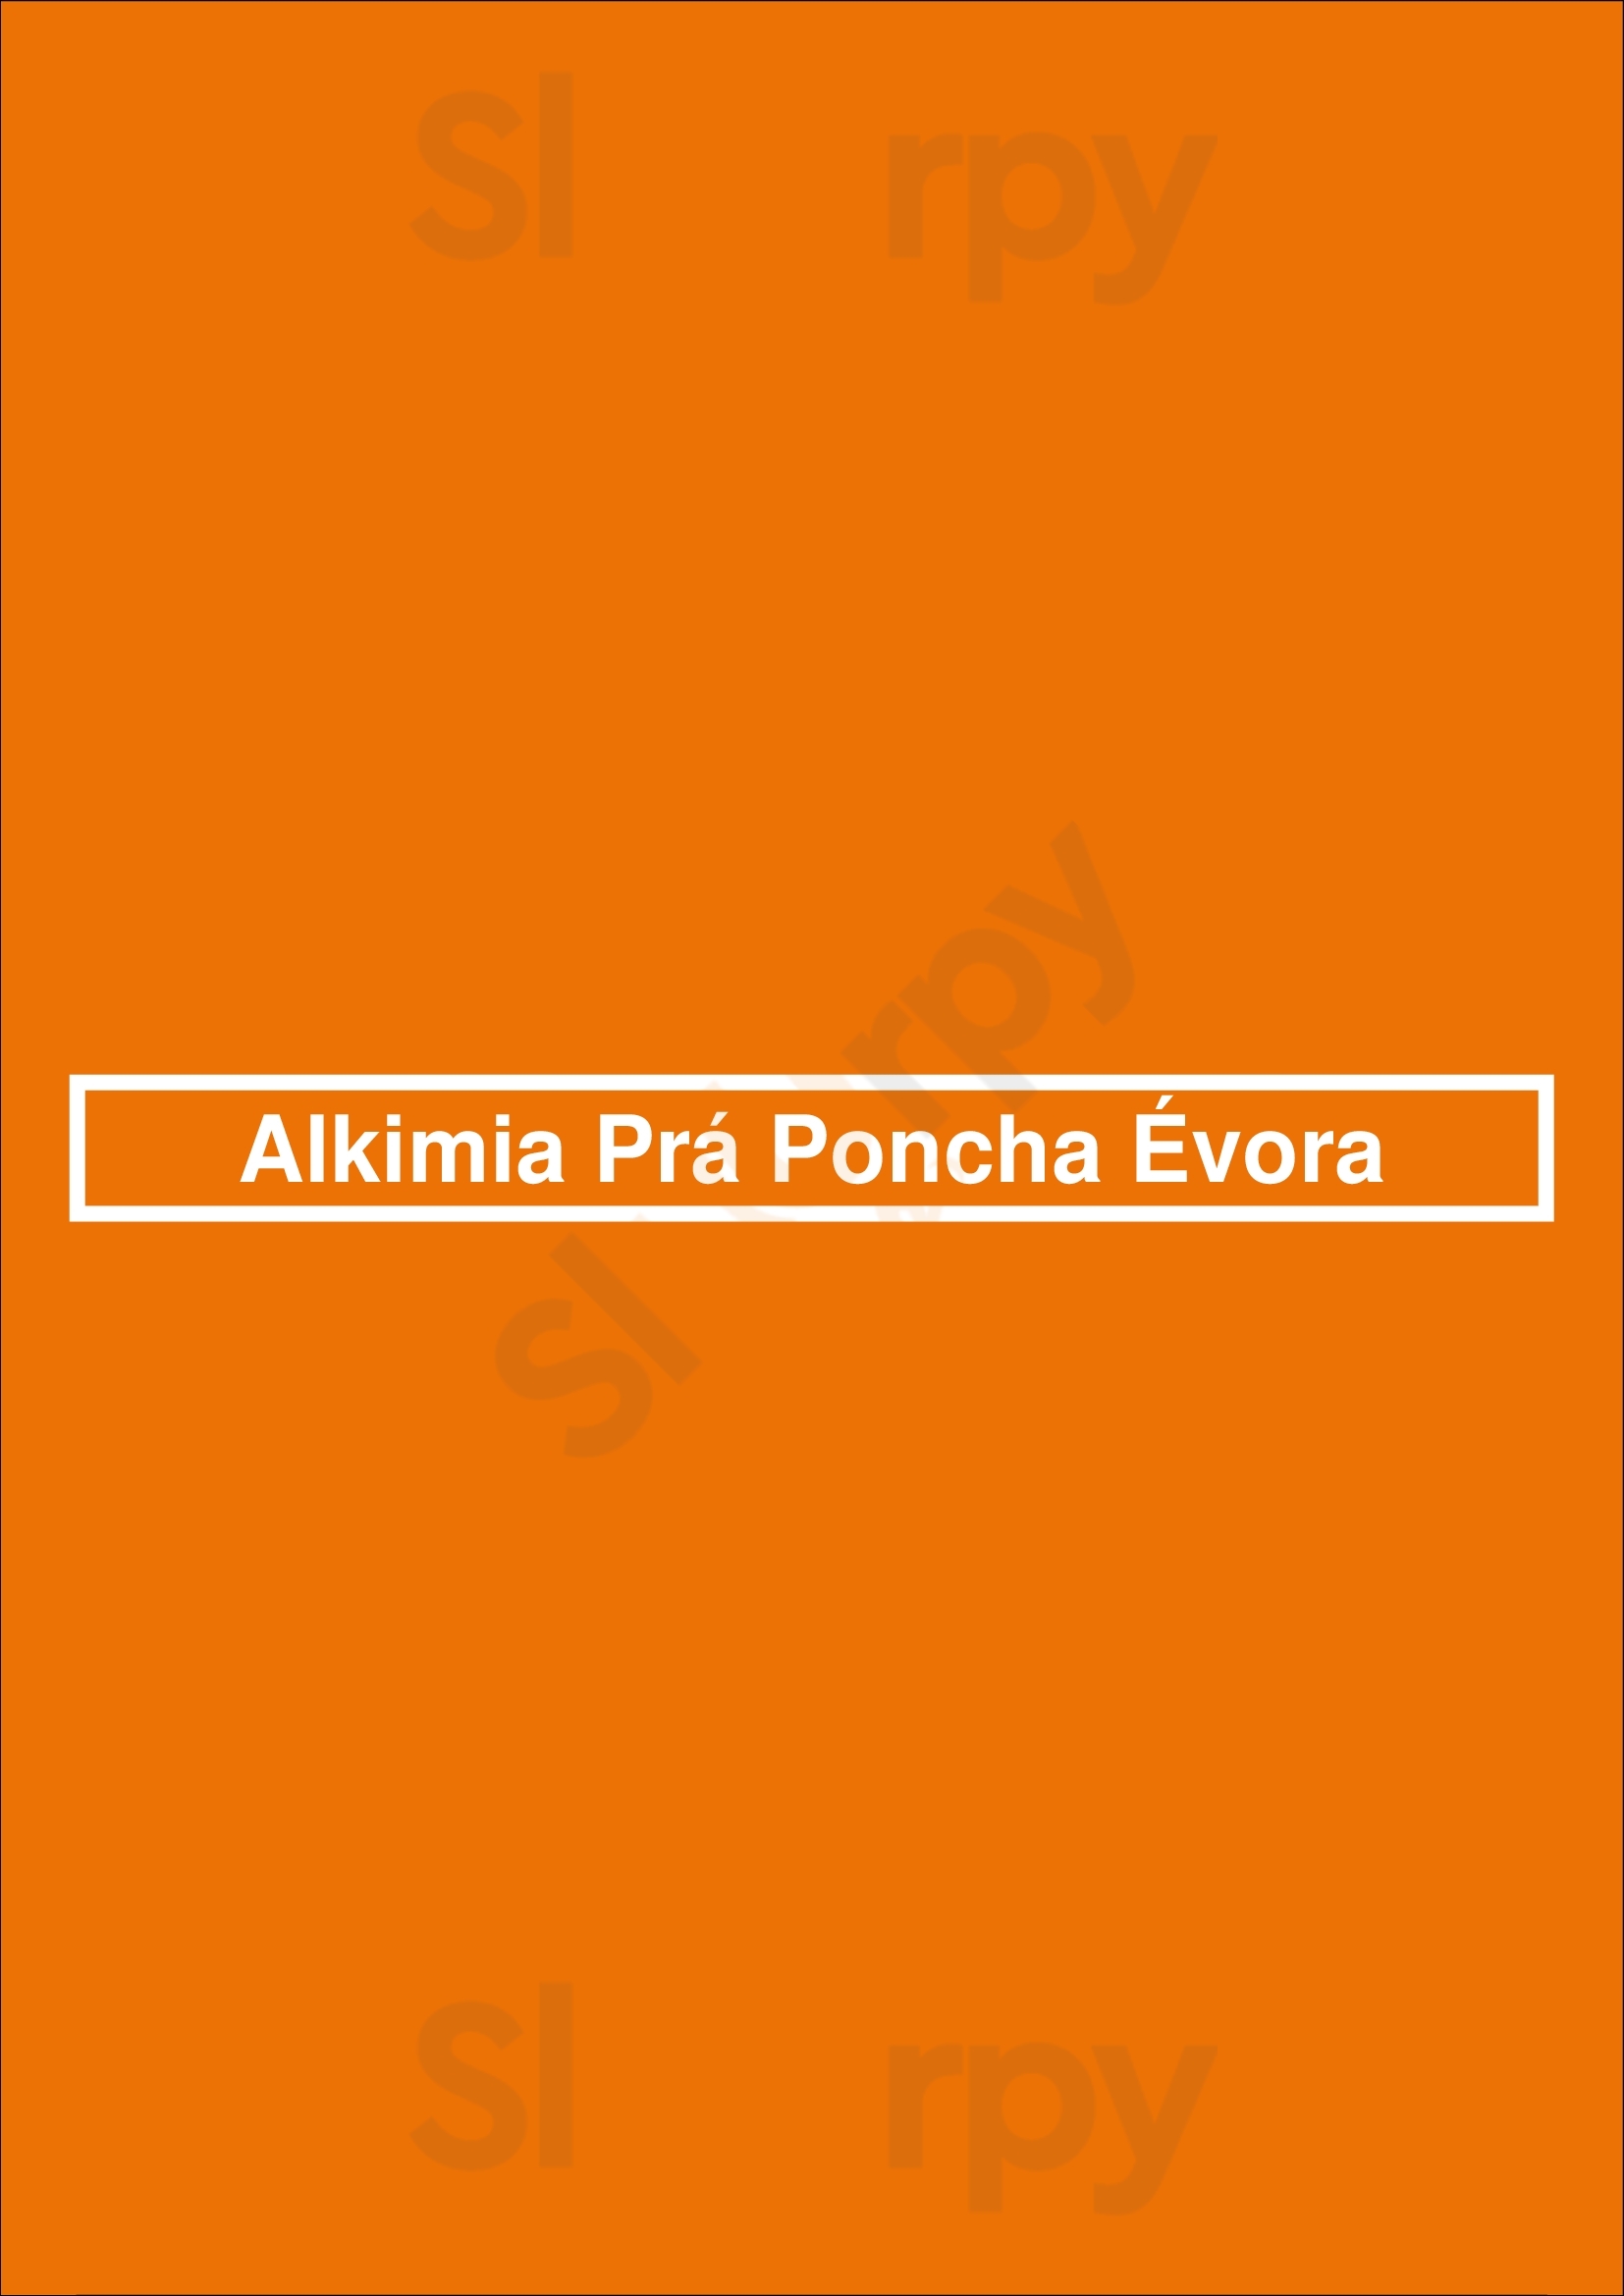 Alkimia Pra Poncha Évora Menu - 1